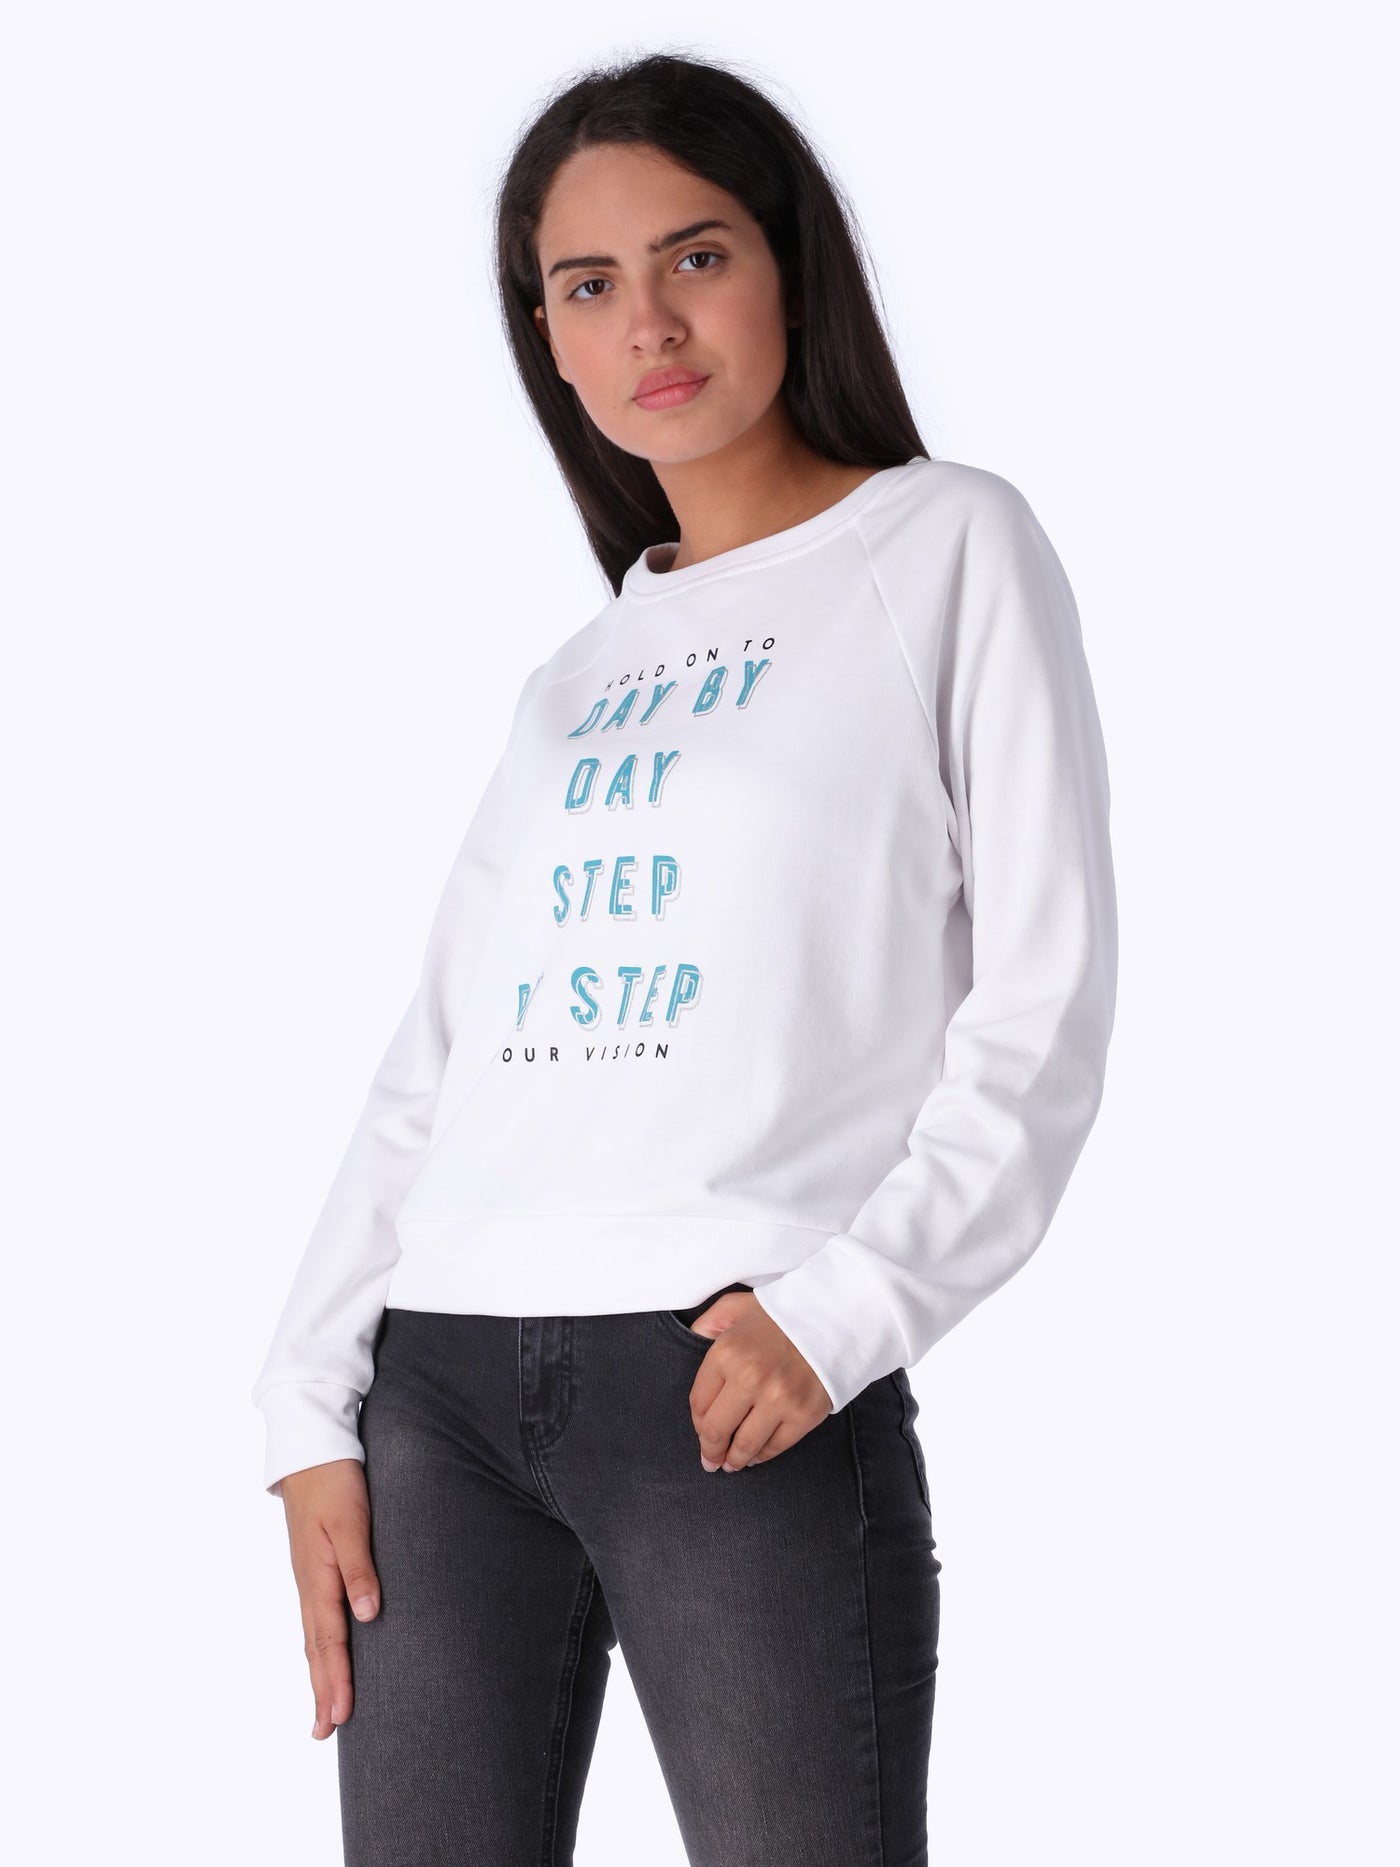 OR Women's Printed Sweatshirt